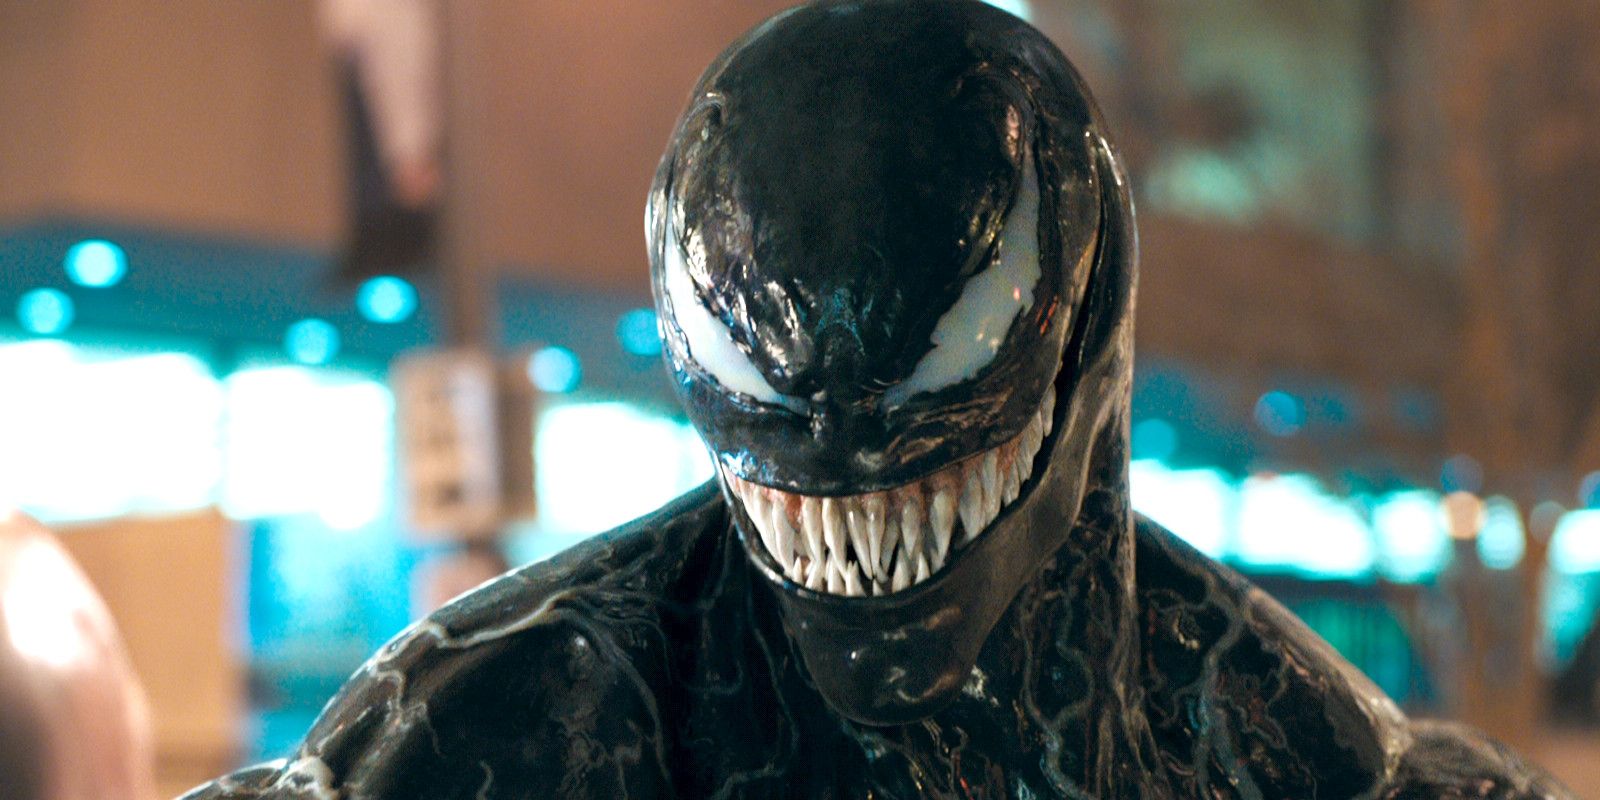 Venom Movie Poster Puts Focus On Symbiote's Tongue